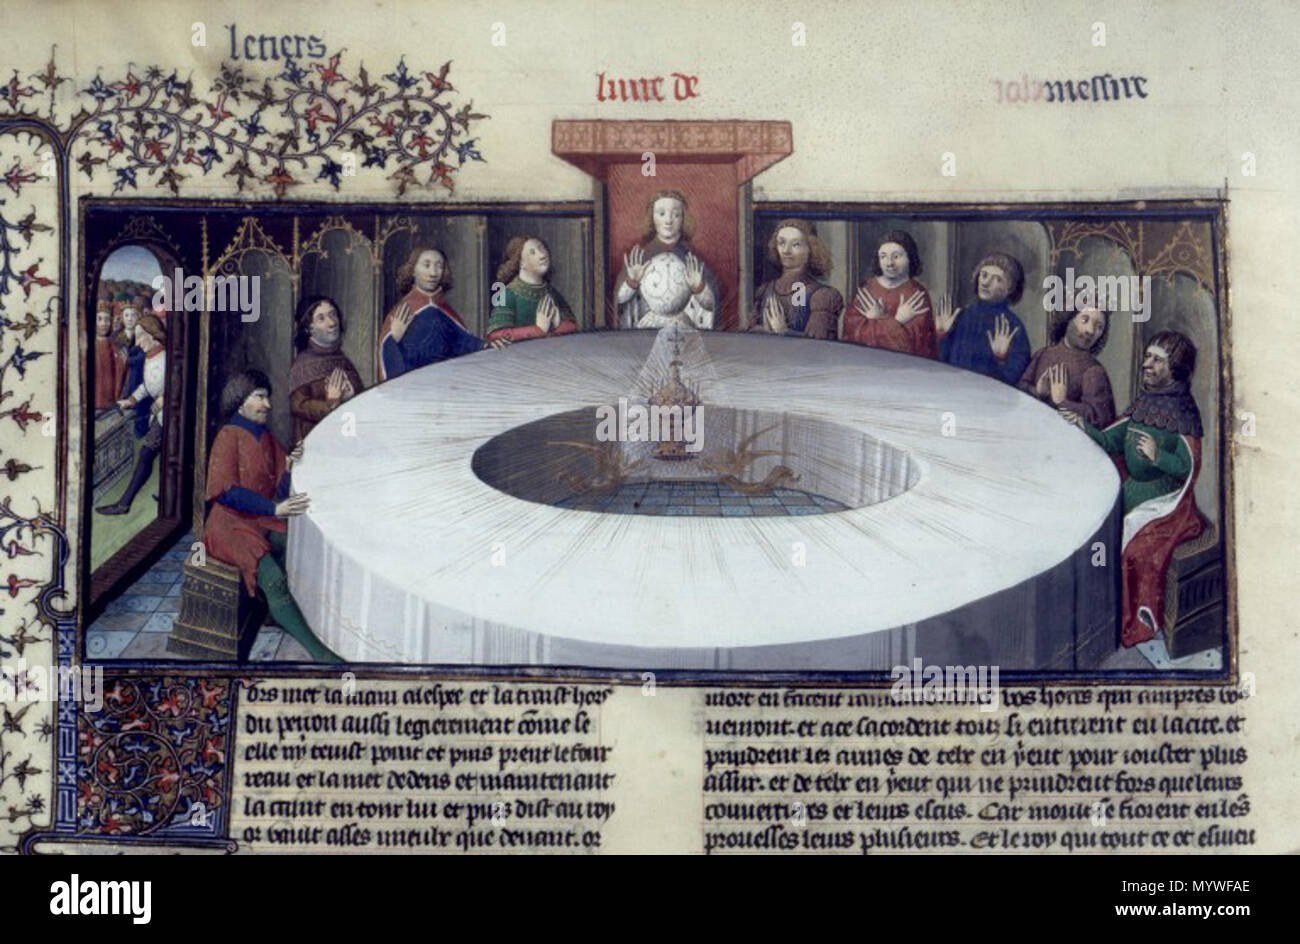 Inglese: Re Artù cavalieri, si sono riuniti presso la tavola rotonda per  celebrare la Pentecoste, vedere una visione del Santo Graal. Il Graal  appare come una velata ciborio, fatto di oro